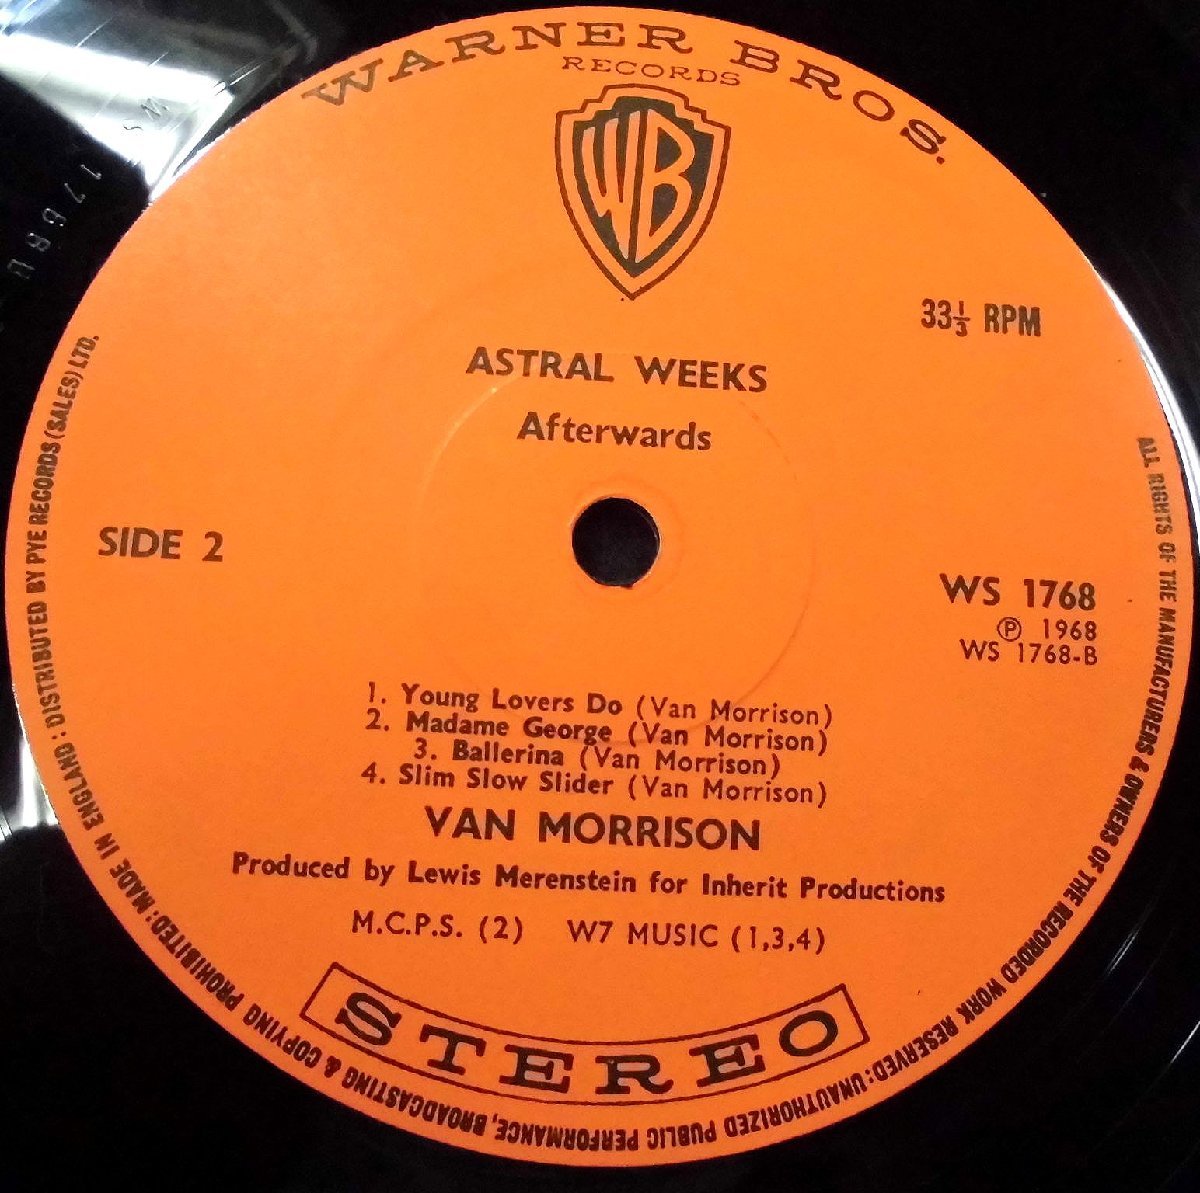 ●UK-Warner Bros. Recordsオリジナル””Coating,Flipback-Cover,w/Orange-Labels!!”” Van Morrison / Astral Weeks - 7